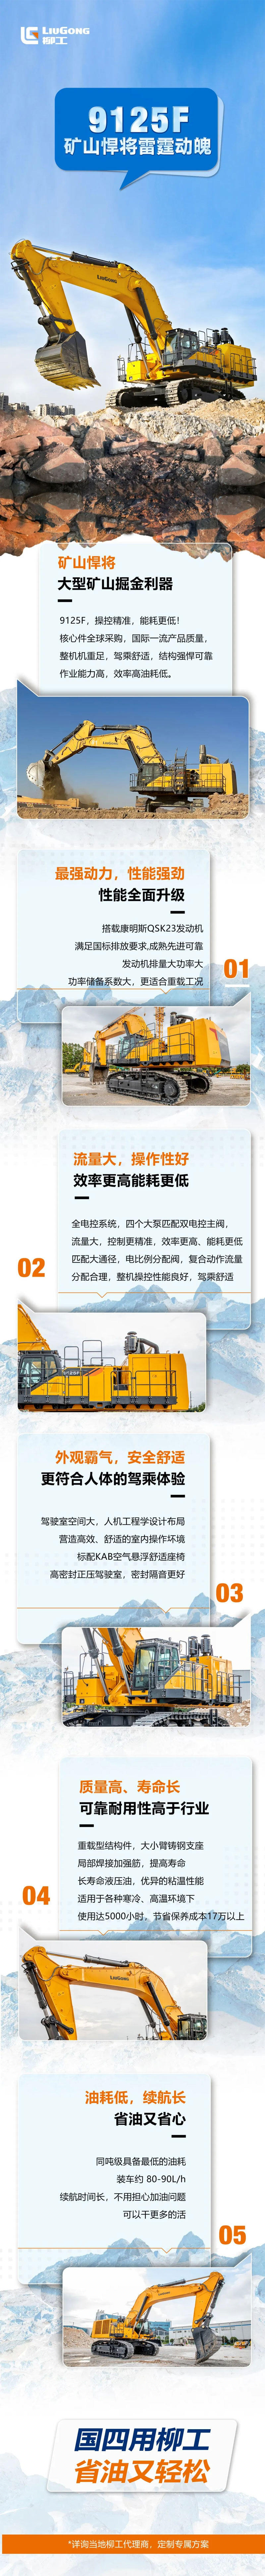 柳工9125F挖掘机宣传海报